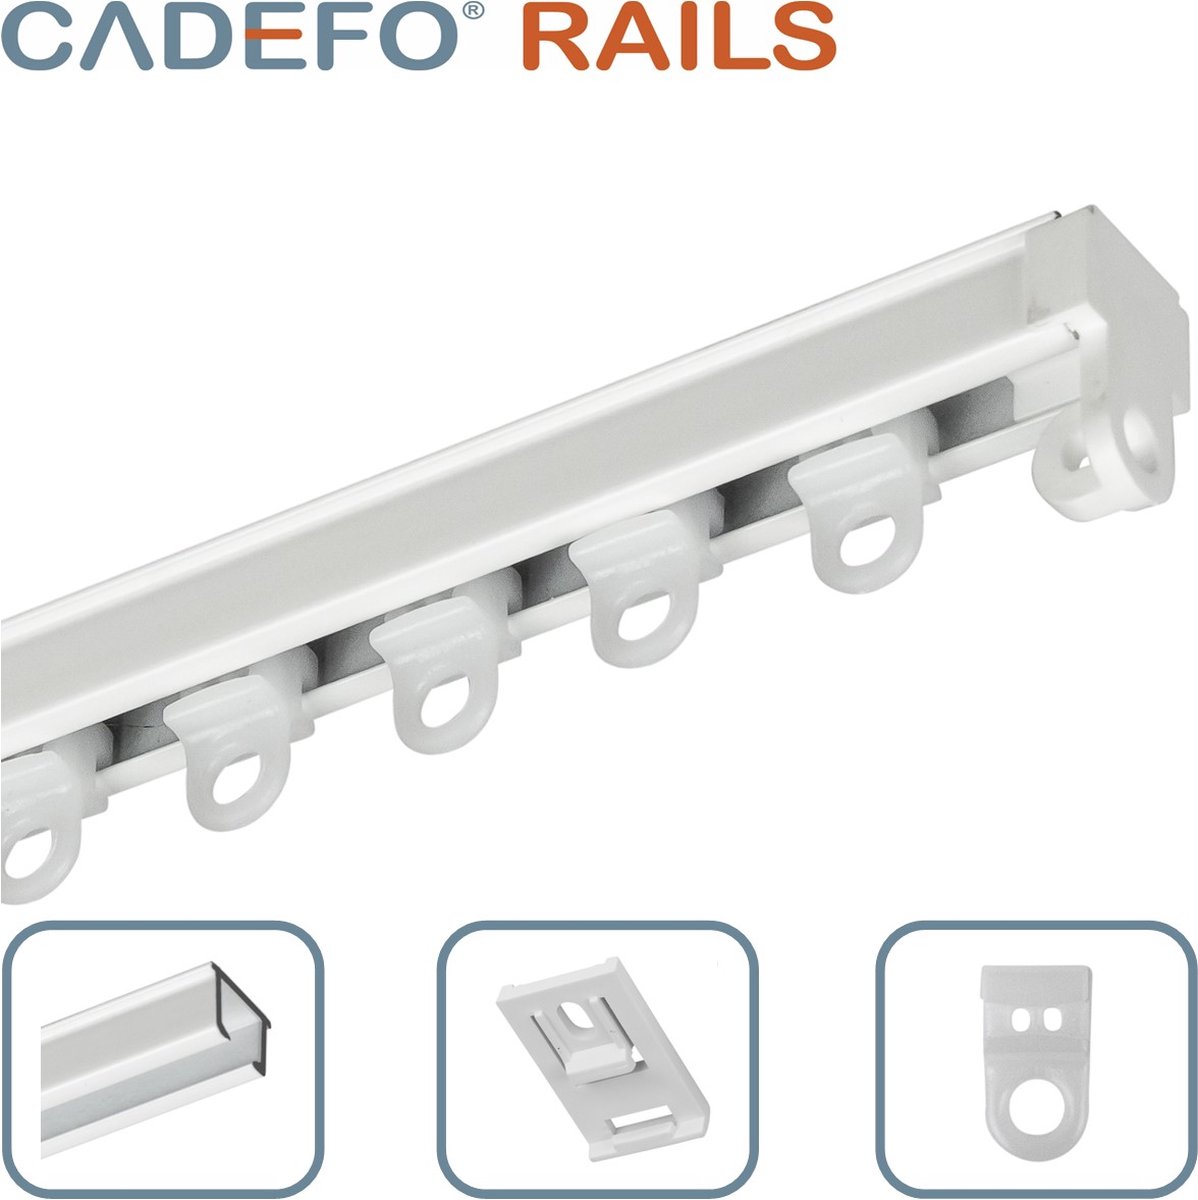 CADEFO RAILS (101 - 150 cm) Gordijnrails - Compleet op maat! - UIT 1 STUK - Leverbaar tot 6 meter - Plafondbevestiging - Lengte 131 cm